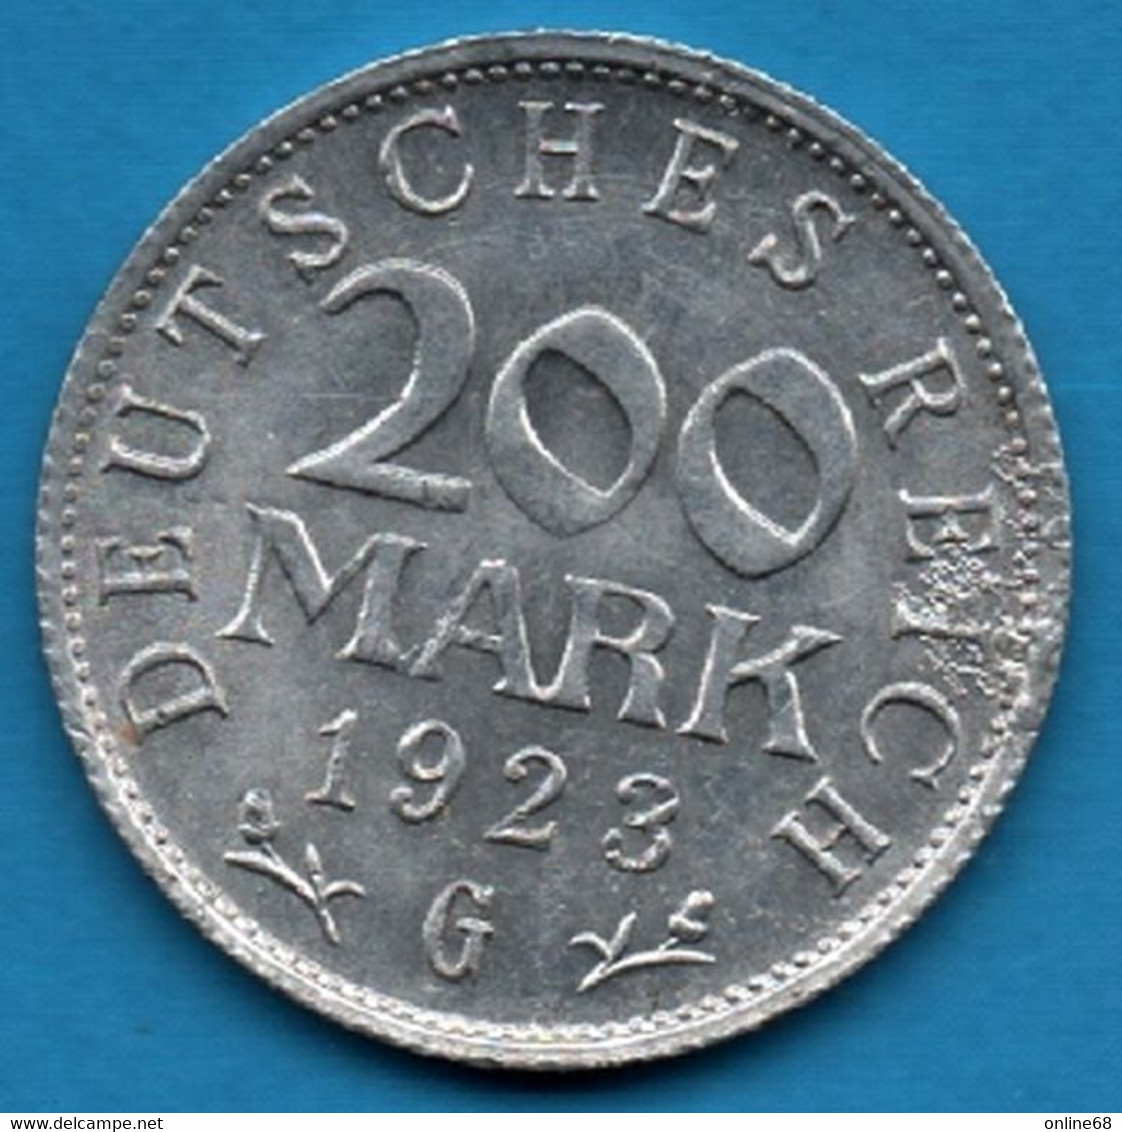 DEUTSCHES REICH 200 MARK 1923 G KM# 35 - 200 & 500 Mark